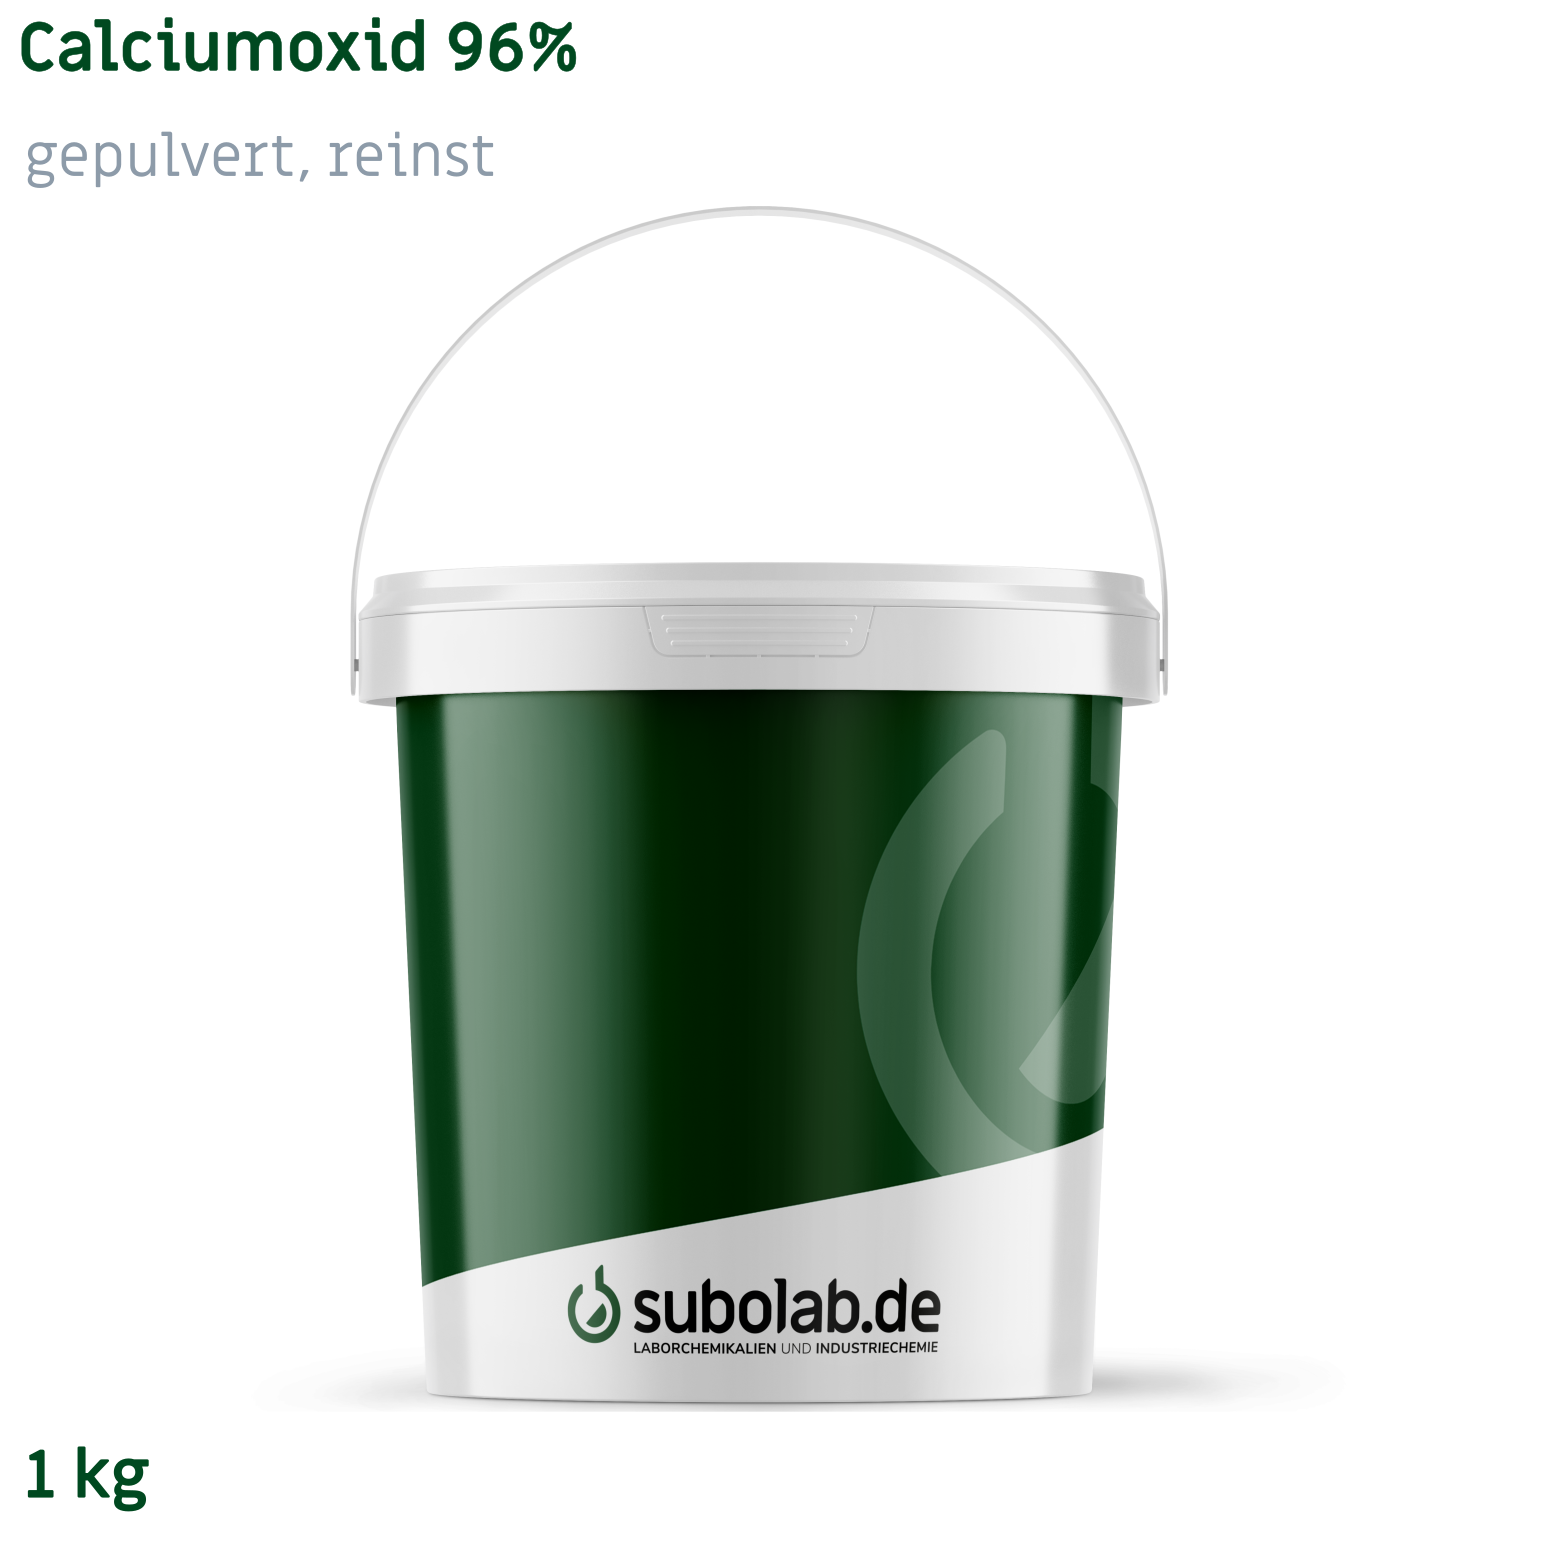 Bild von Calciumoxid 96% gepulvert, reinst (1 kg)